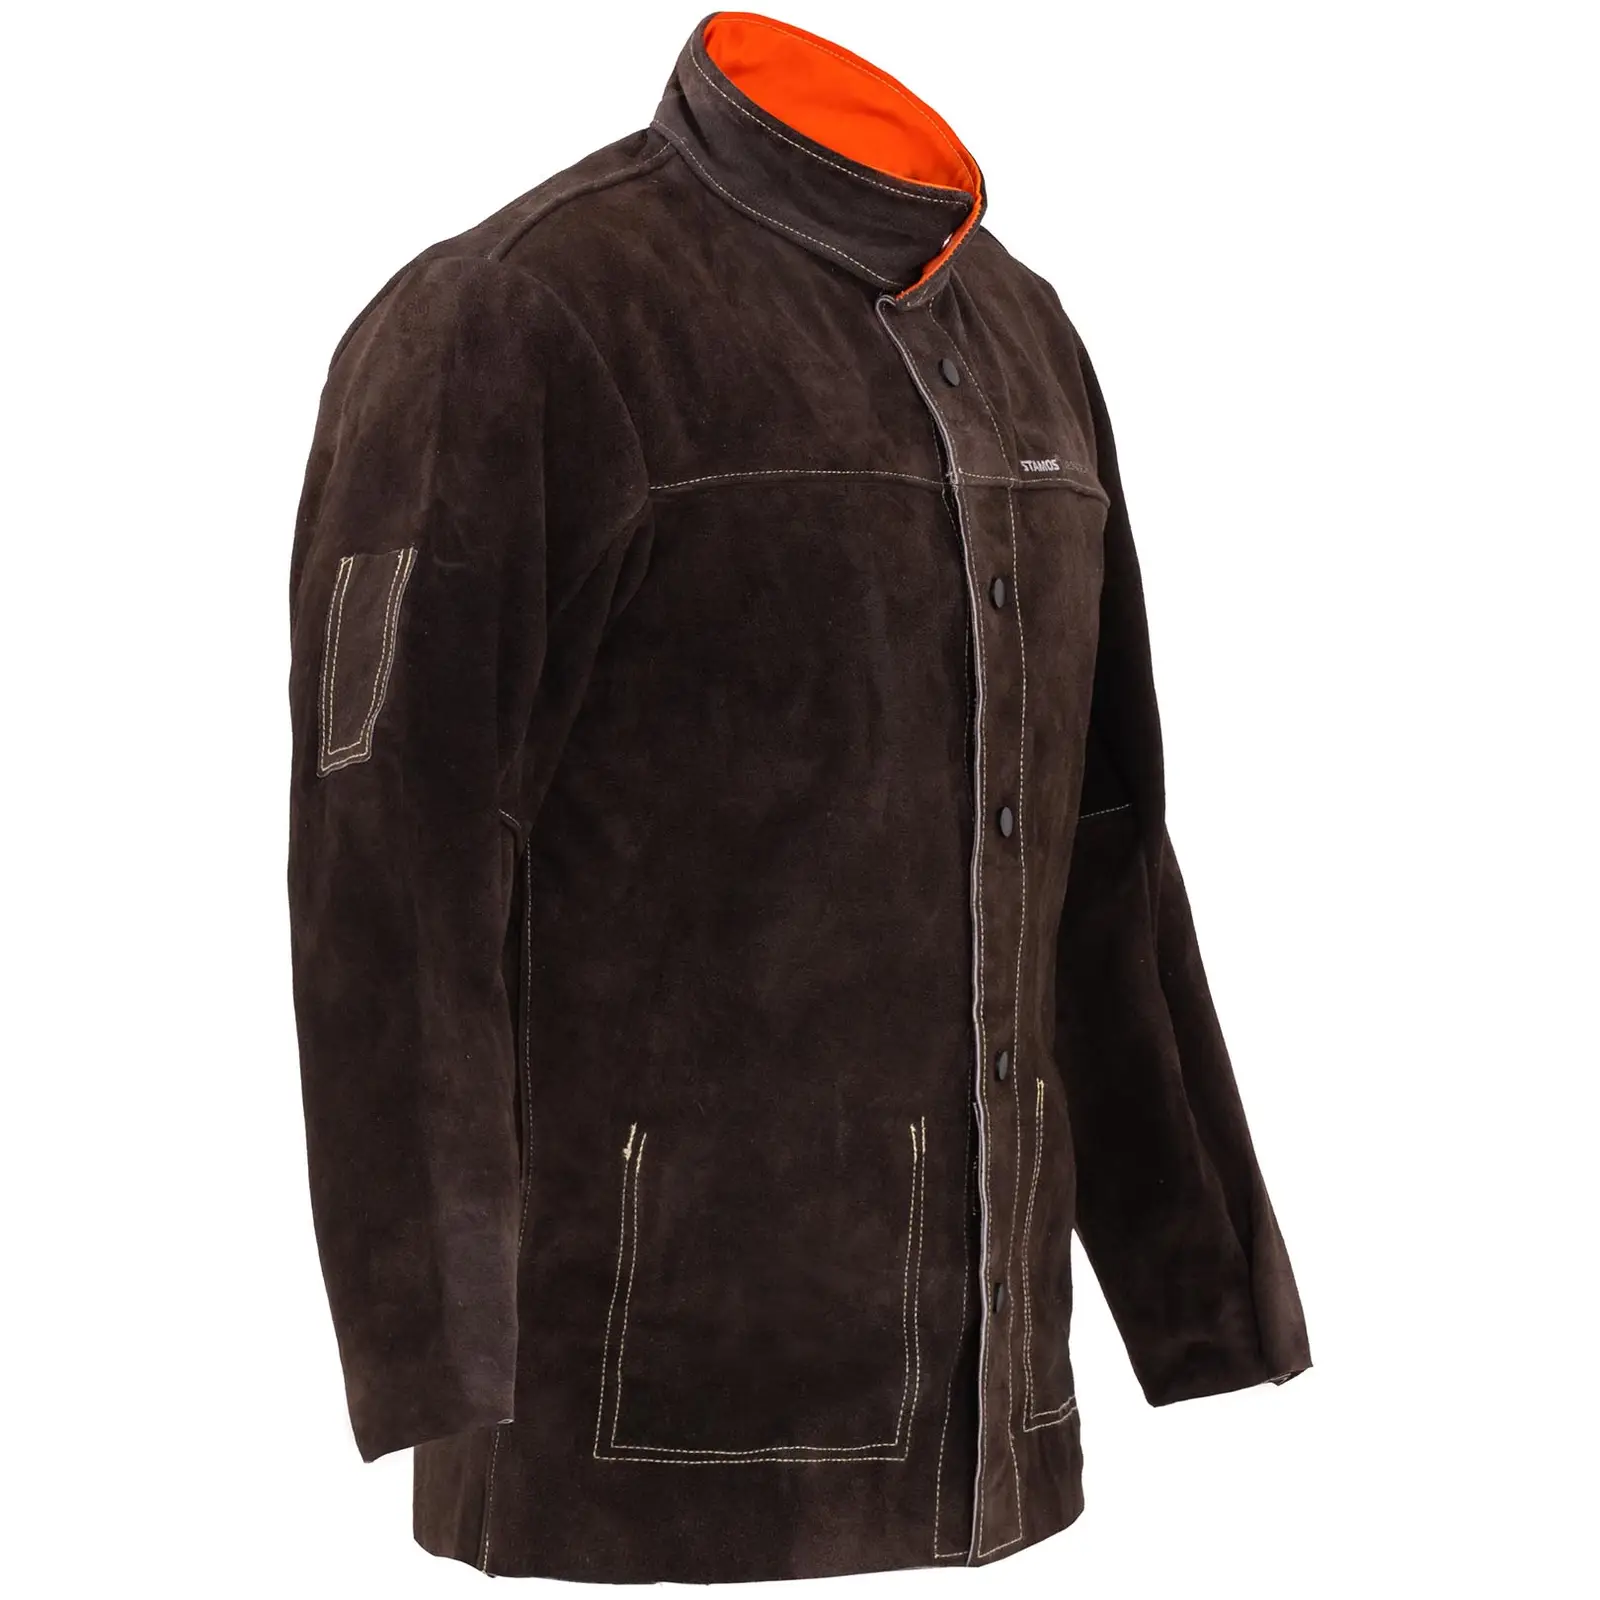 Goveđa kožna jakna za varenje - veličina L